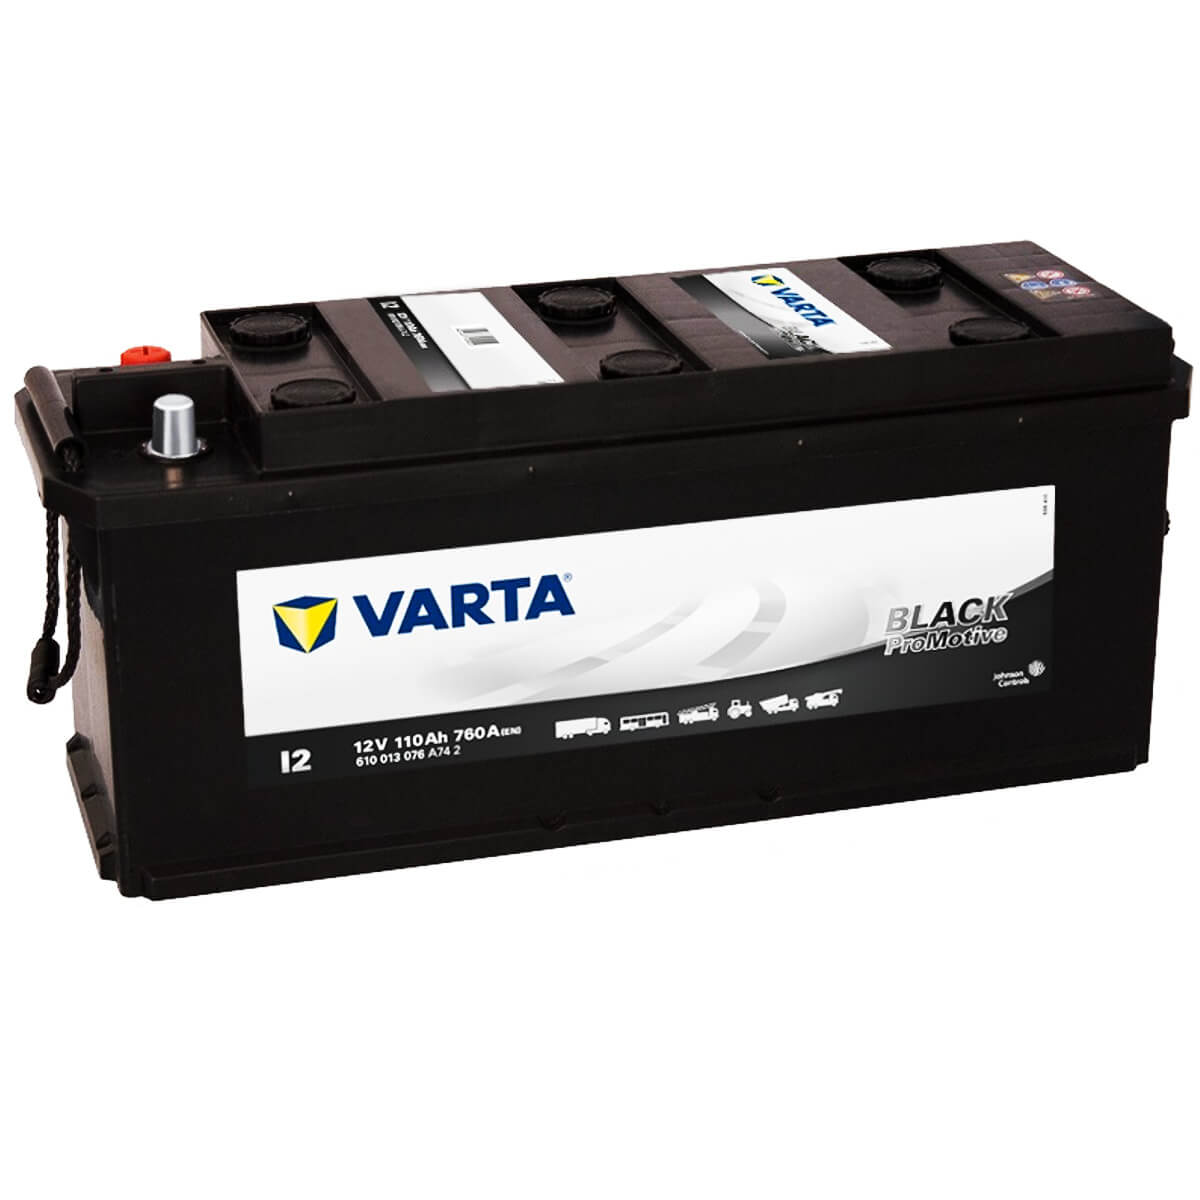 Batterien für Nutzfahrzeuge kaufen